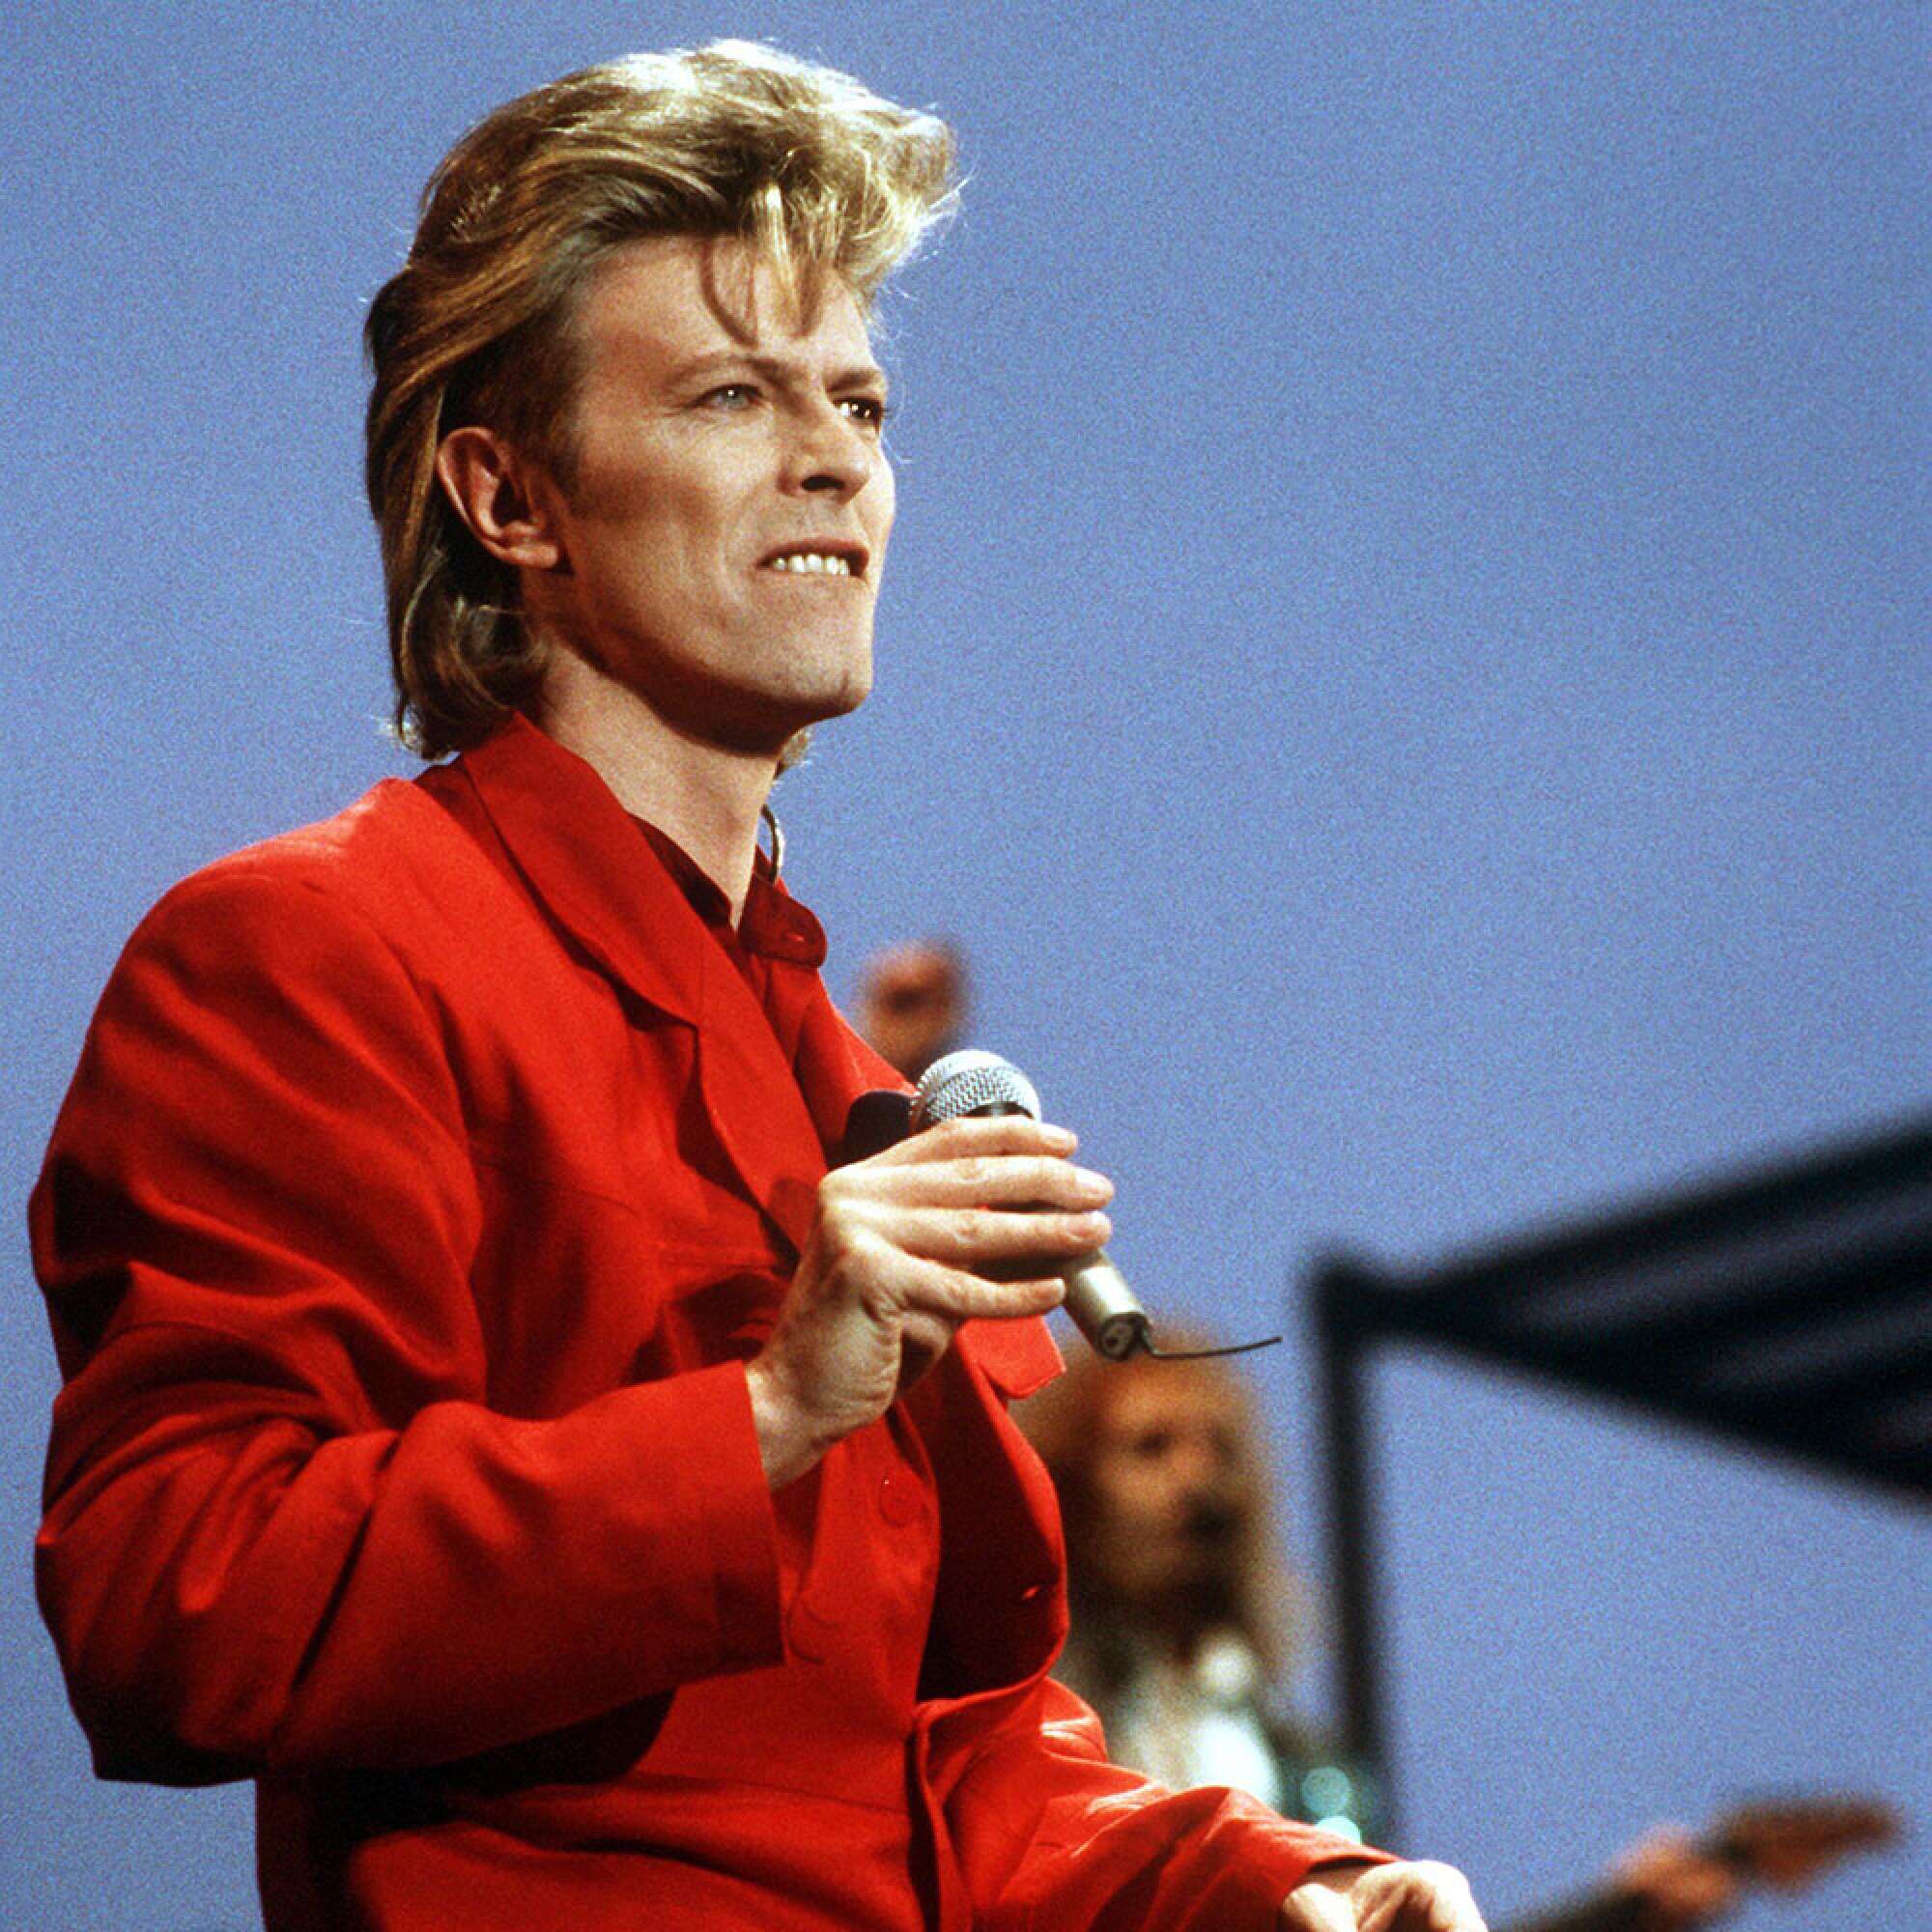 David Bowie am singen